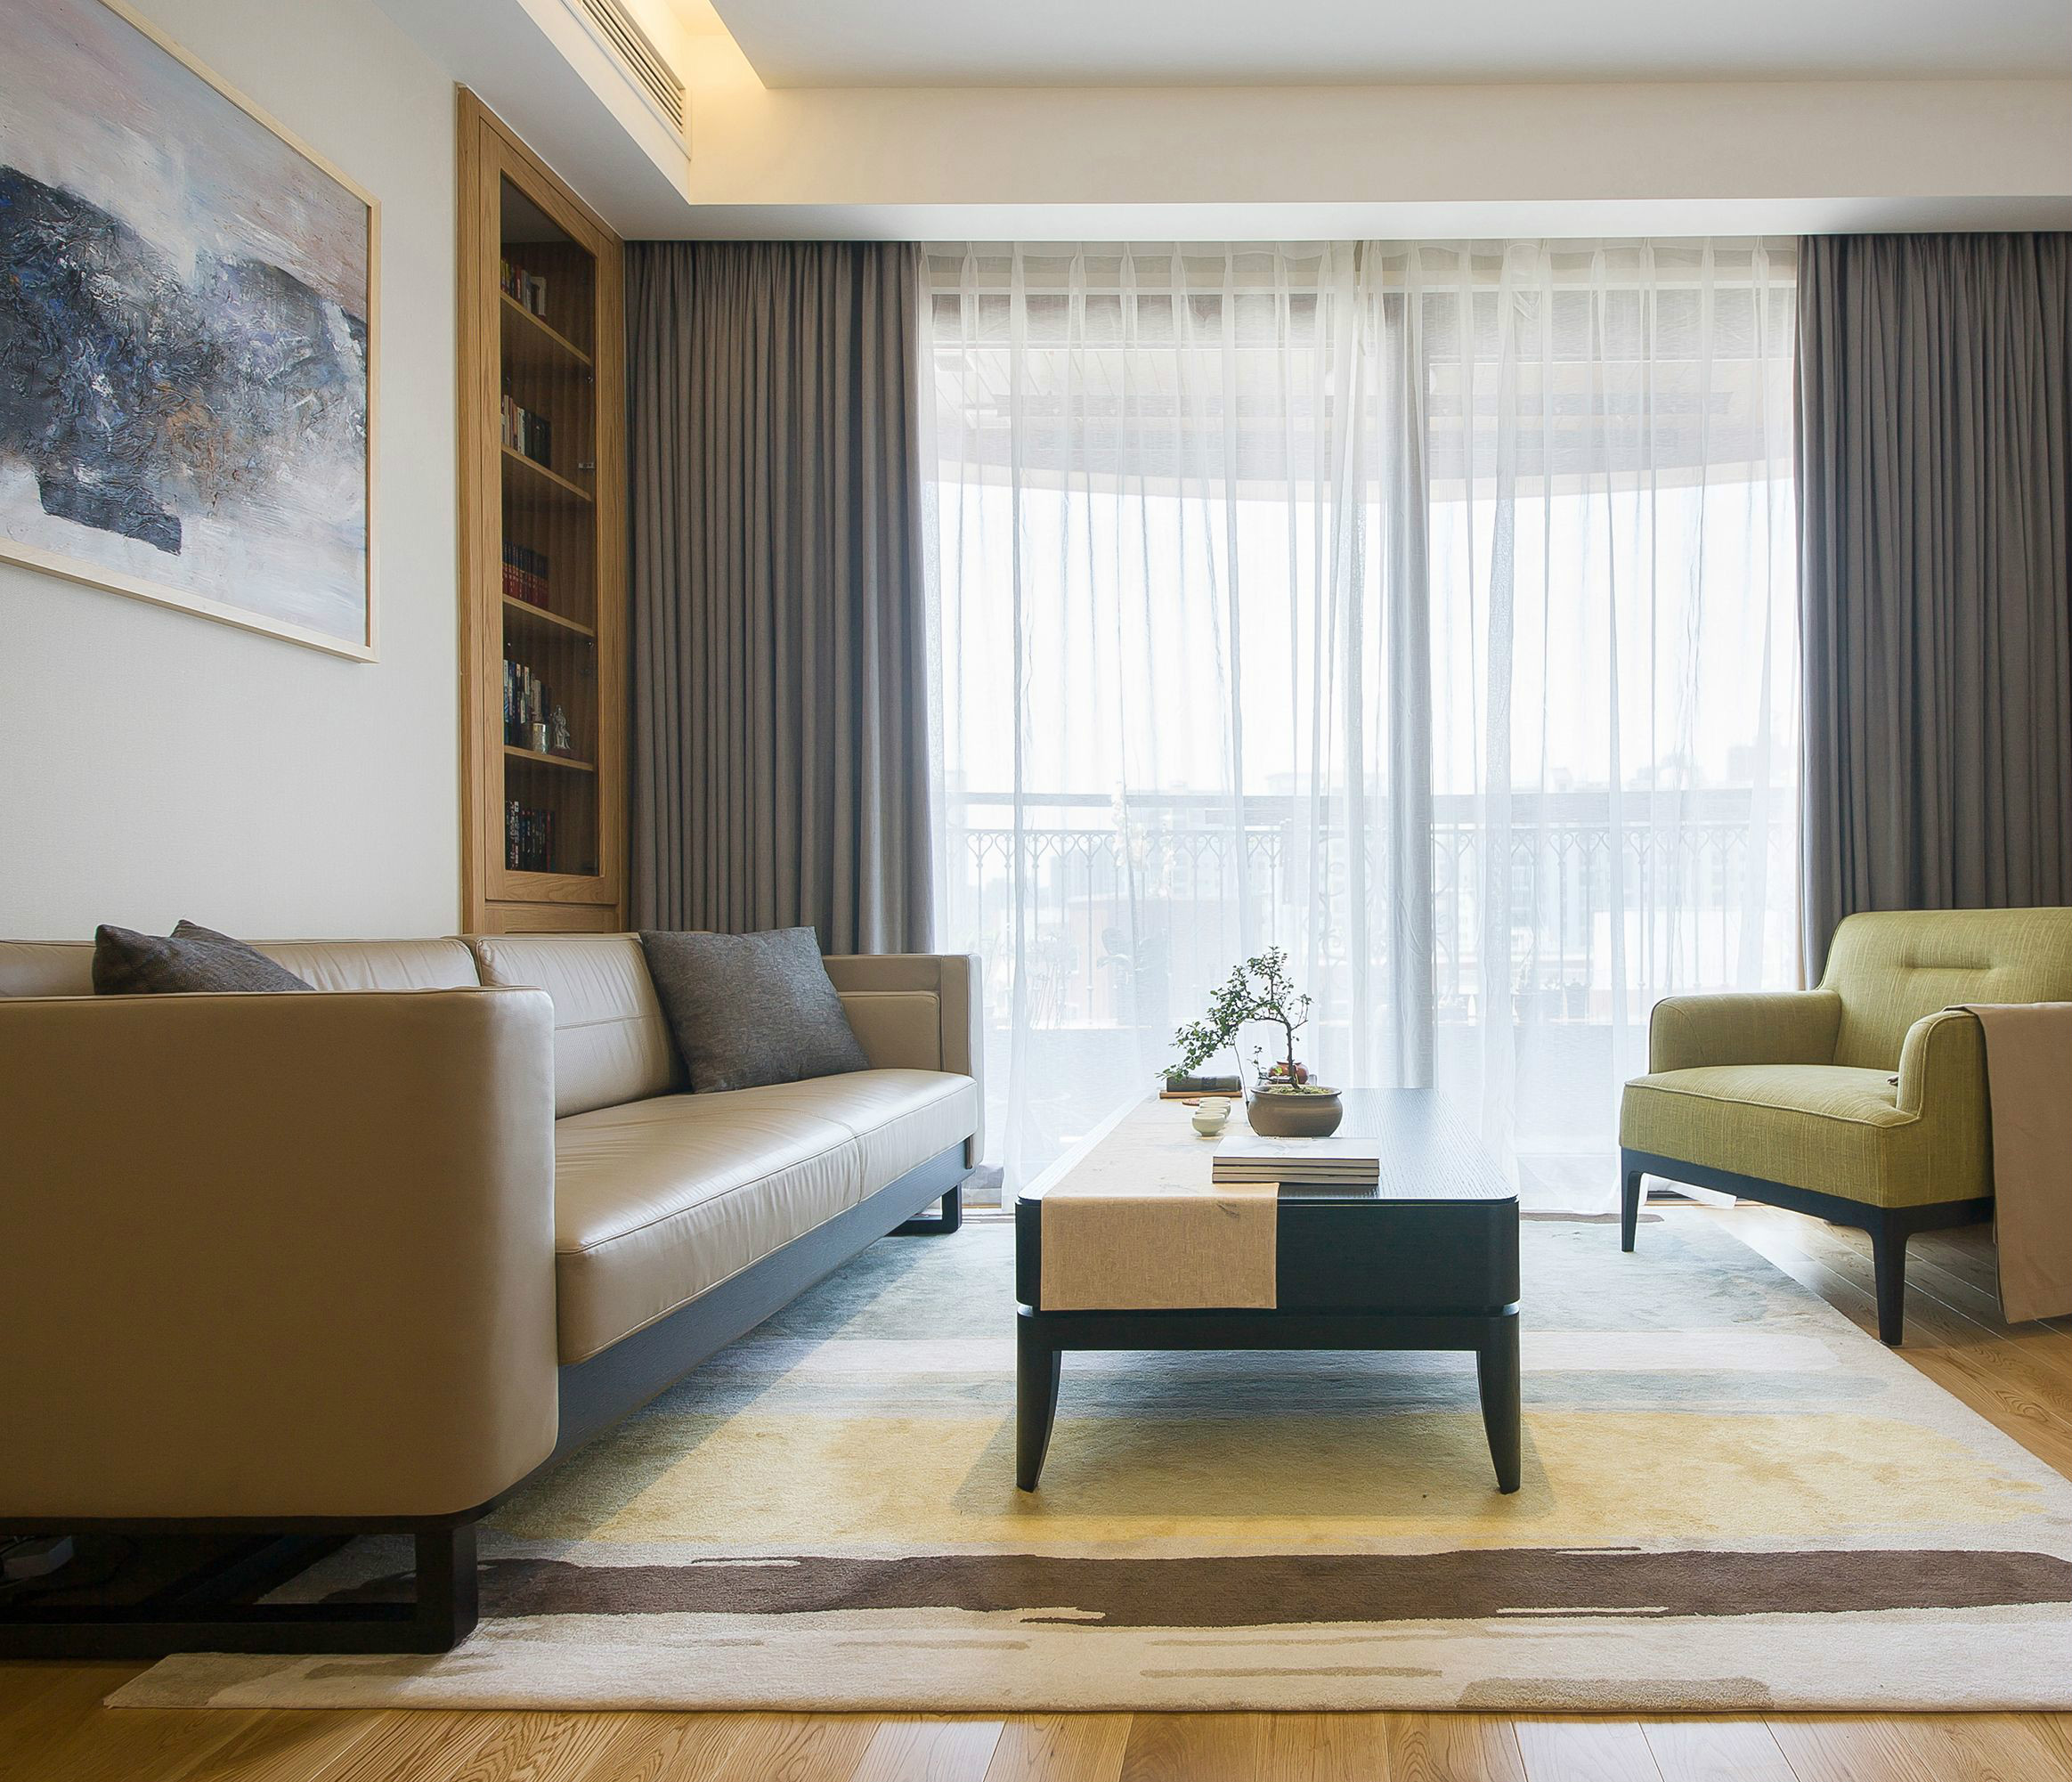 浅色的客厅设计给人舒适放松的感受，营造出一种温馨时尚的氛围。